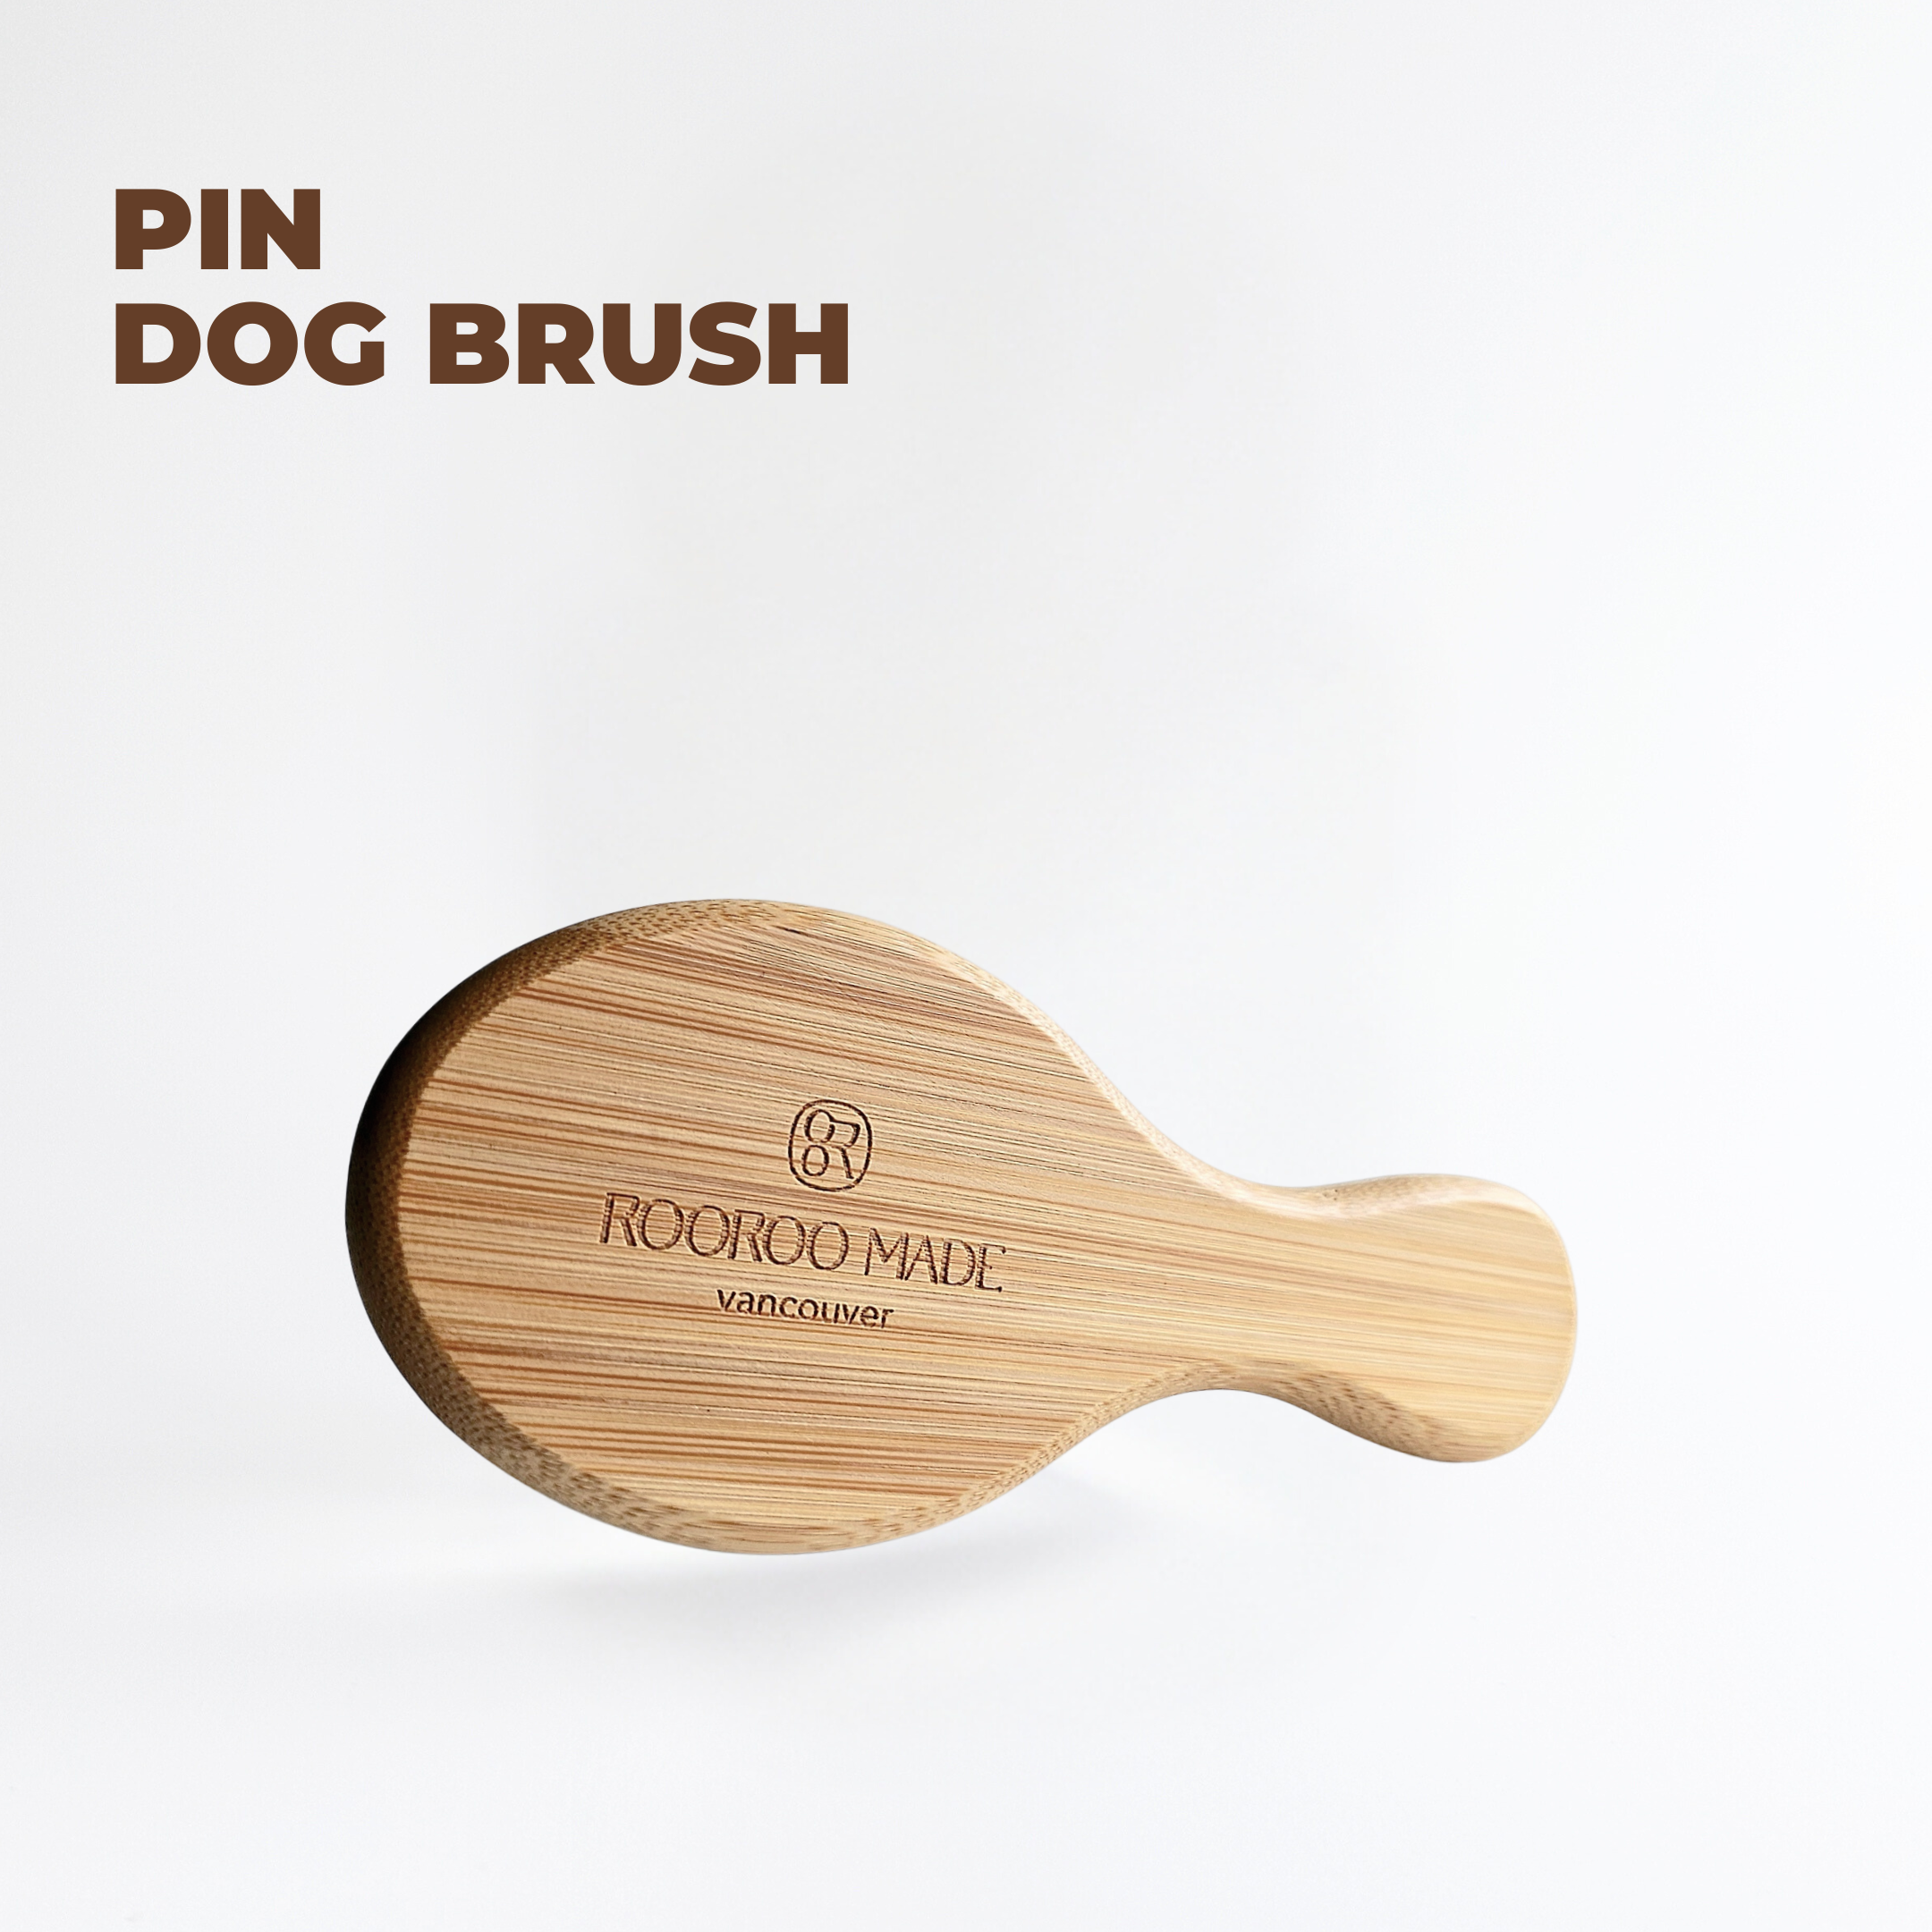 Pin Dog Brush